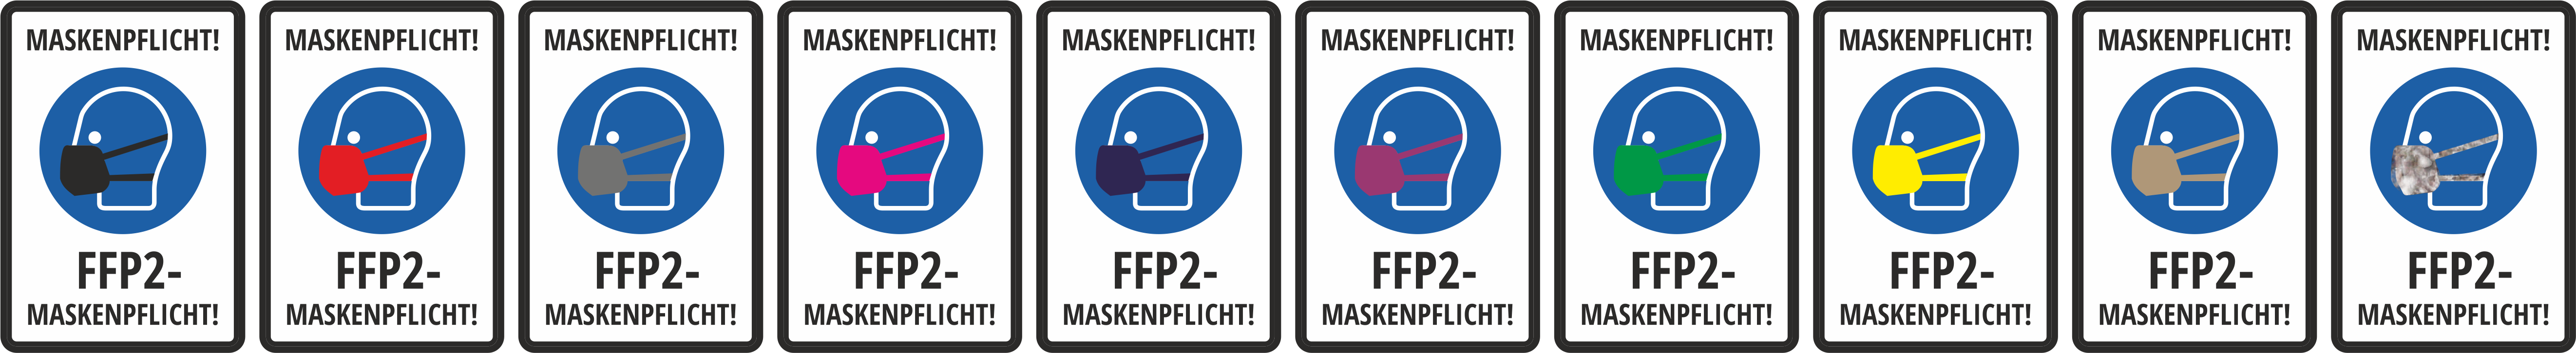 FFP2 Masken in Farbe mit Logo 